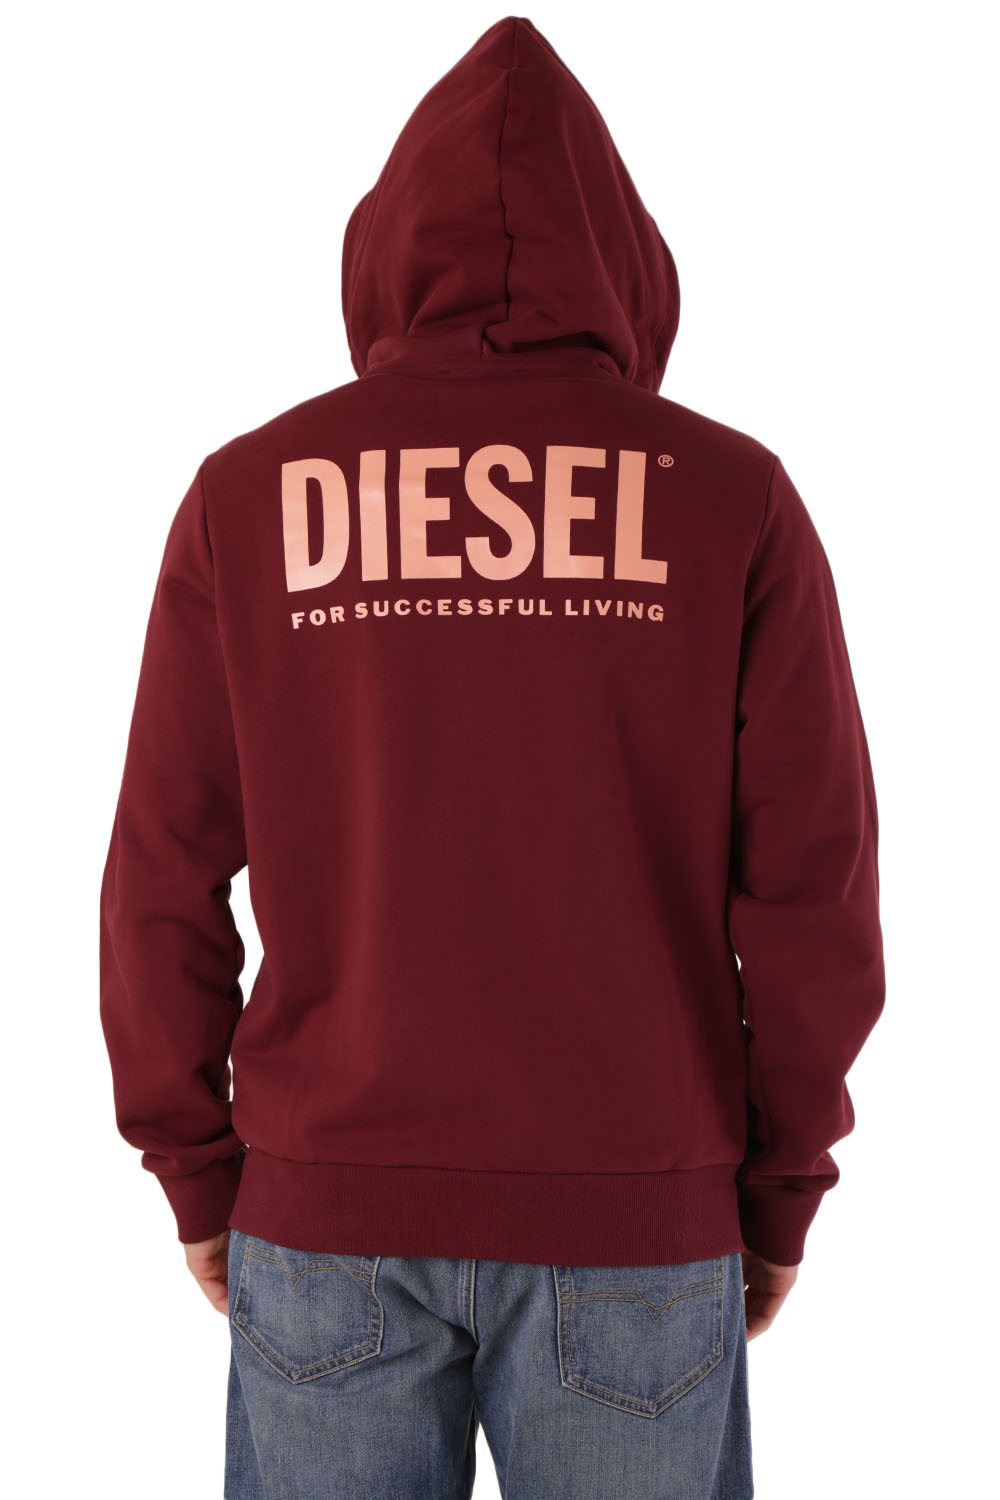 diesel - felpe